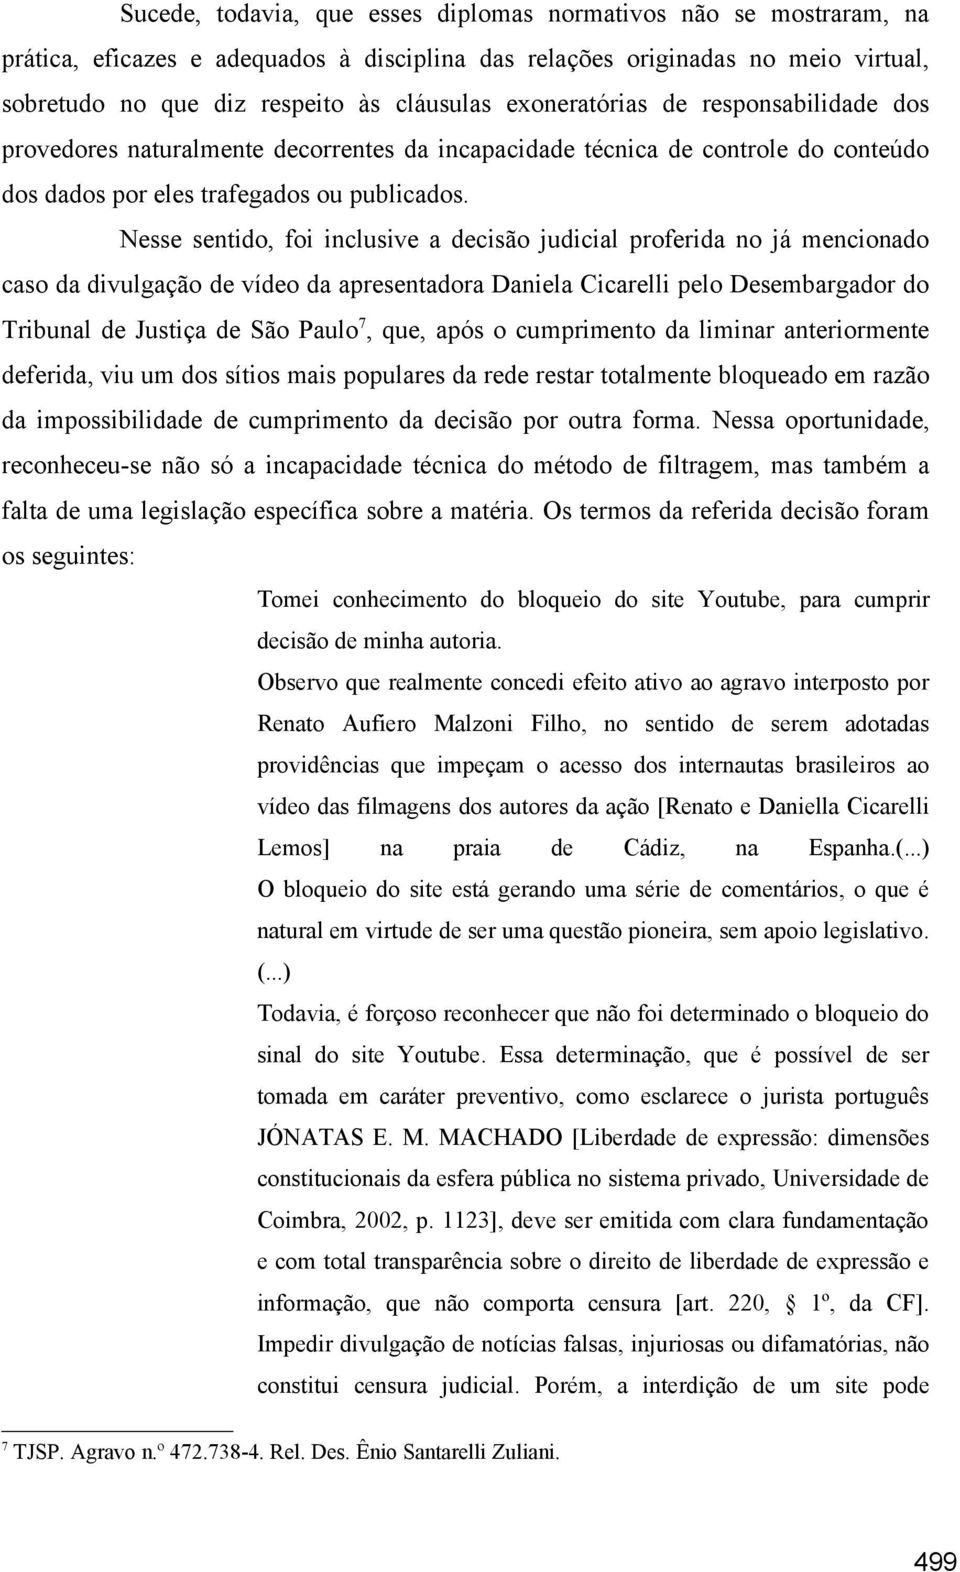 Nesse sentido, foi inclusive a decisão judicial proferida no já mencionado caso da divulgação de vídeo da apresentadora Daniela Cicarelli pelo Desembargador do Tribunal de Justiça de São Paulo 7,